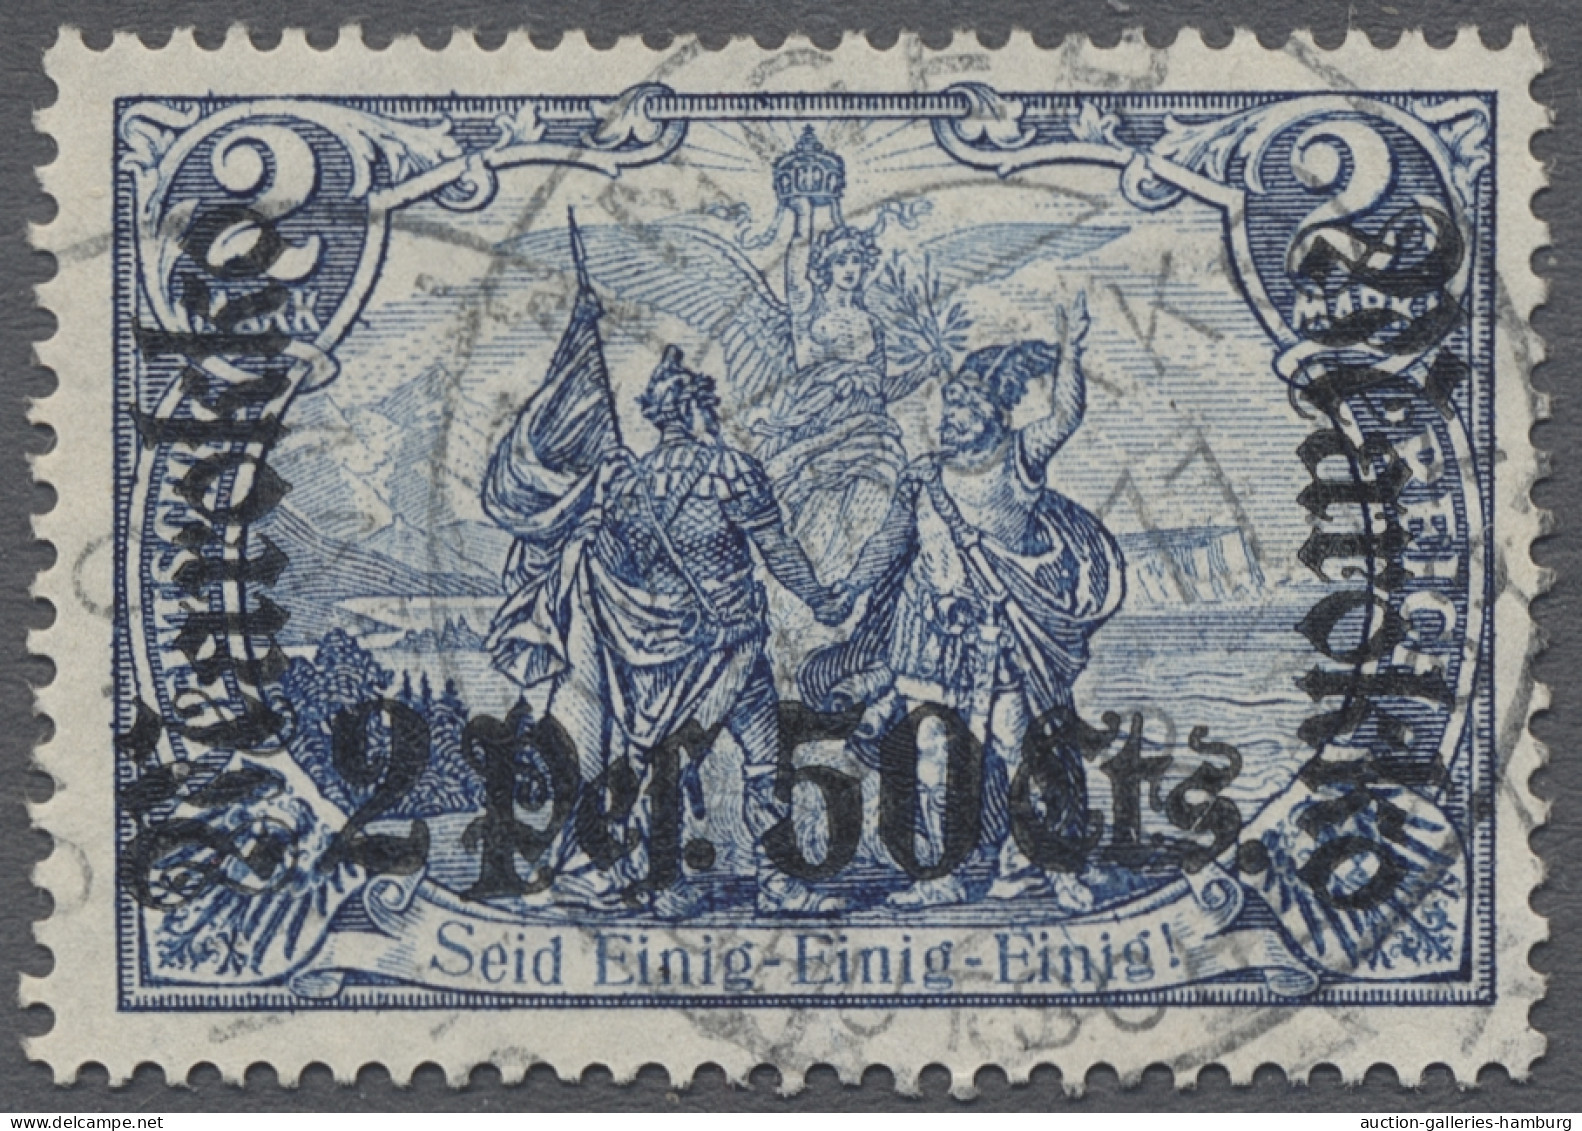 Deutsche Post In Marokko: 1911, DEUTSCHES REICH Mit Wz., Landesname "Marokko", D - Morocco (offices)